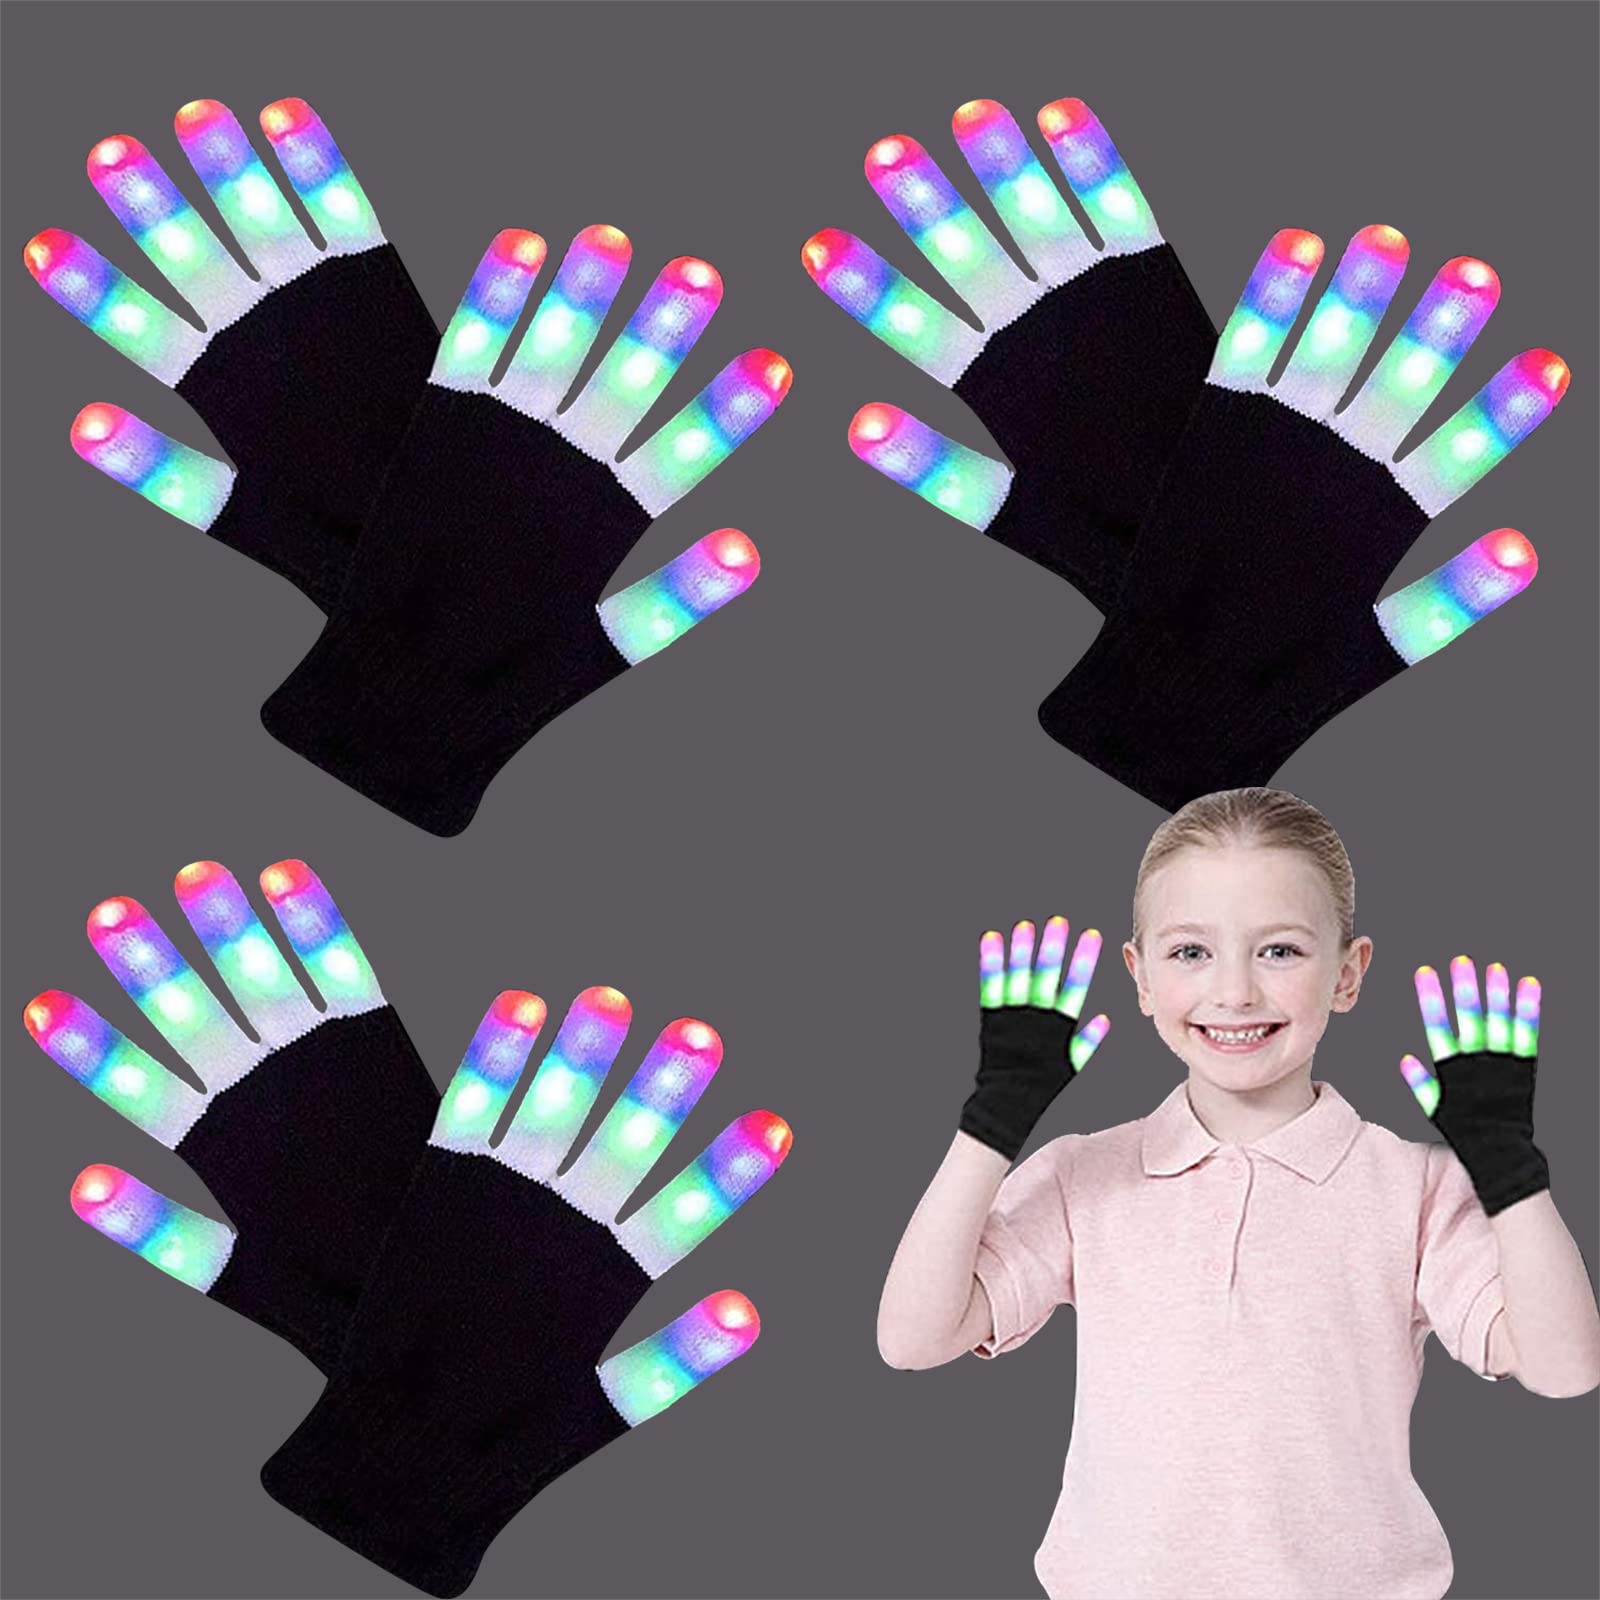 GreaSmart LED Gloves